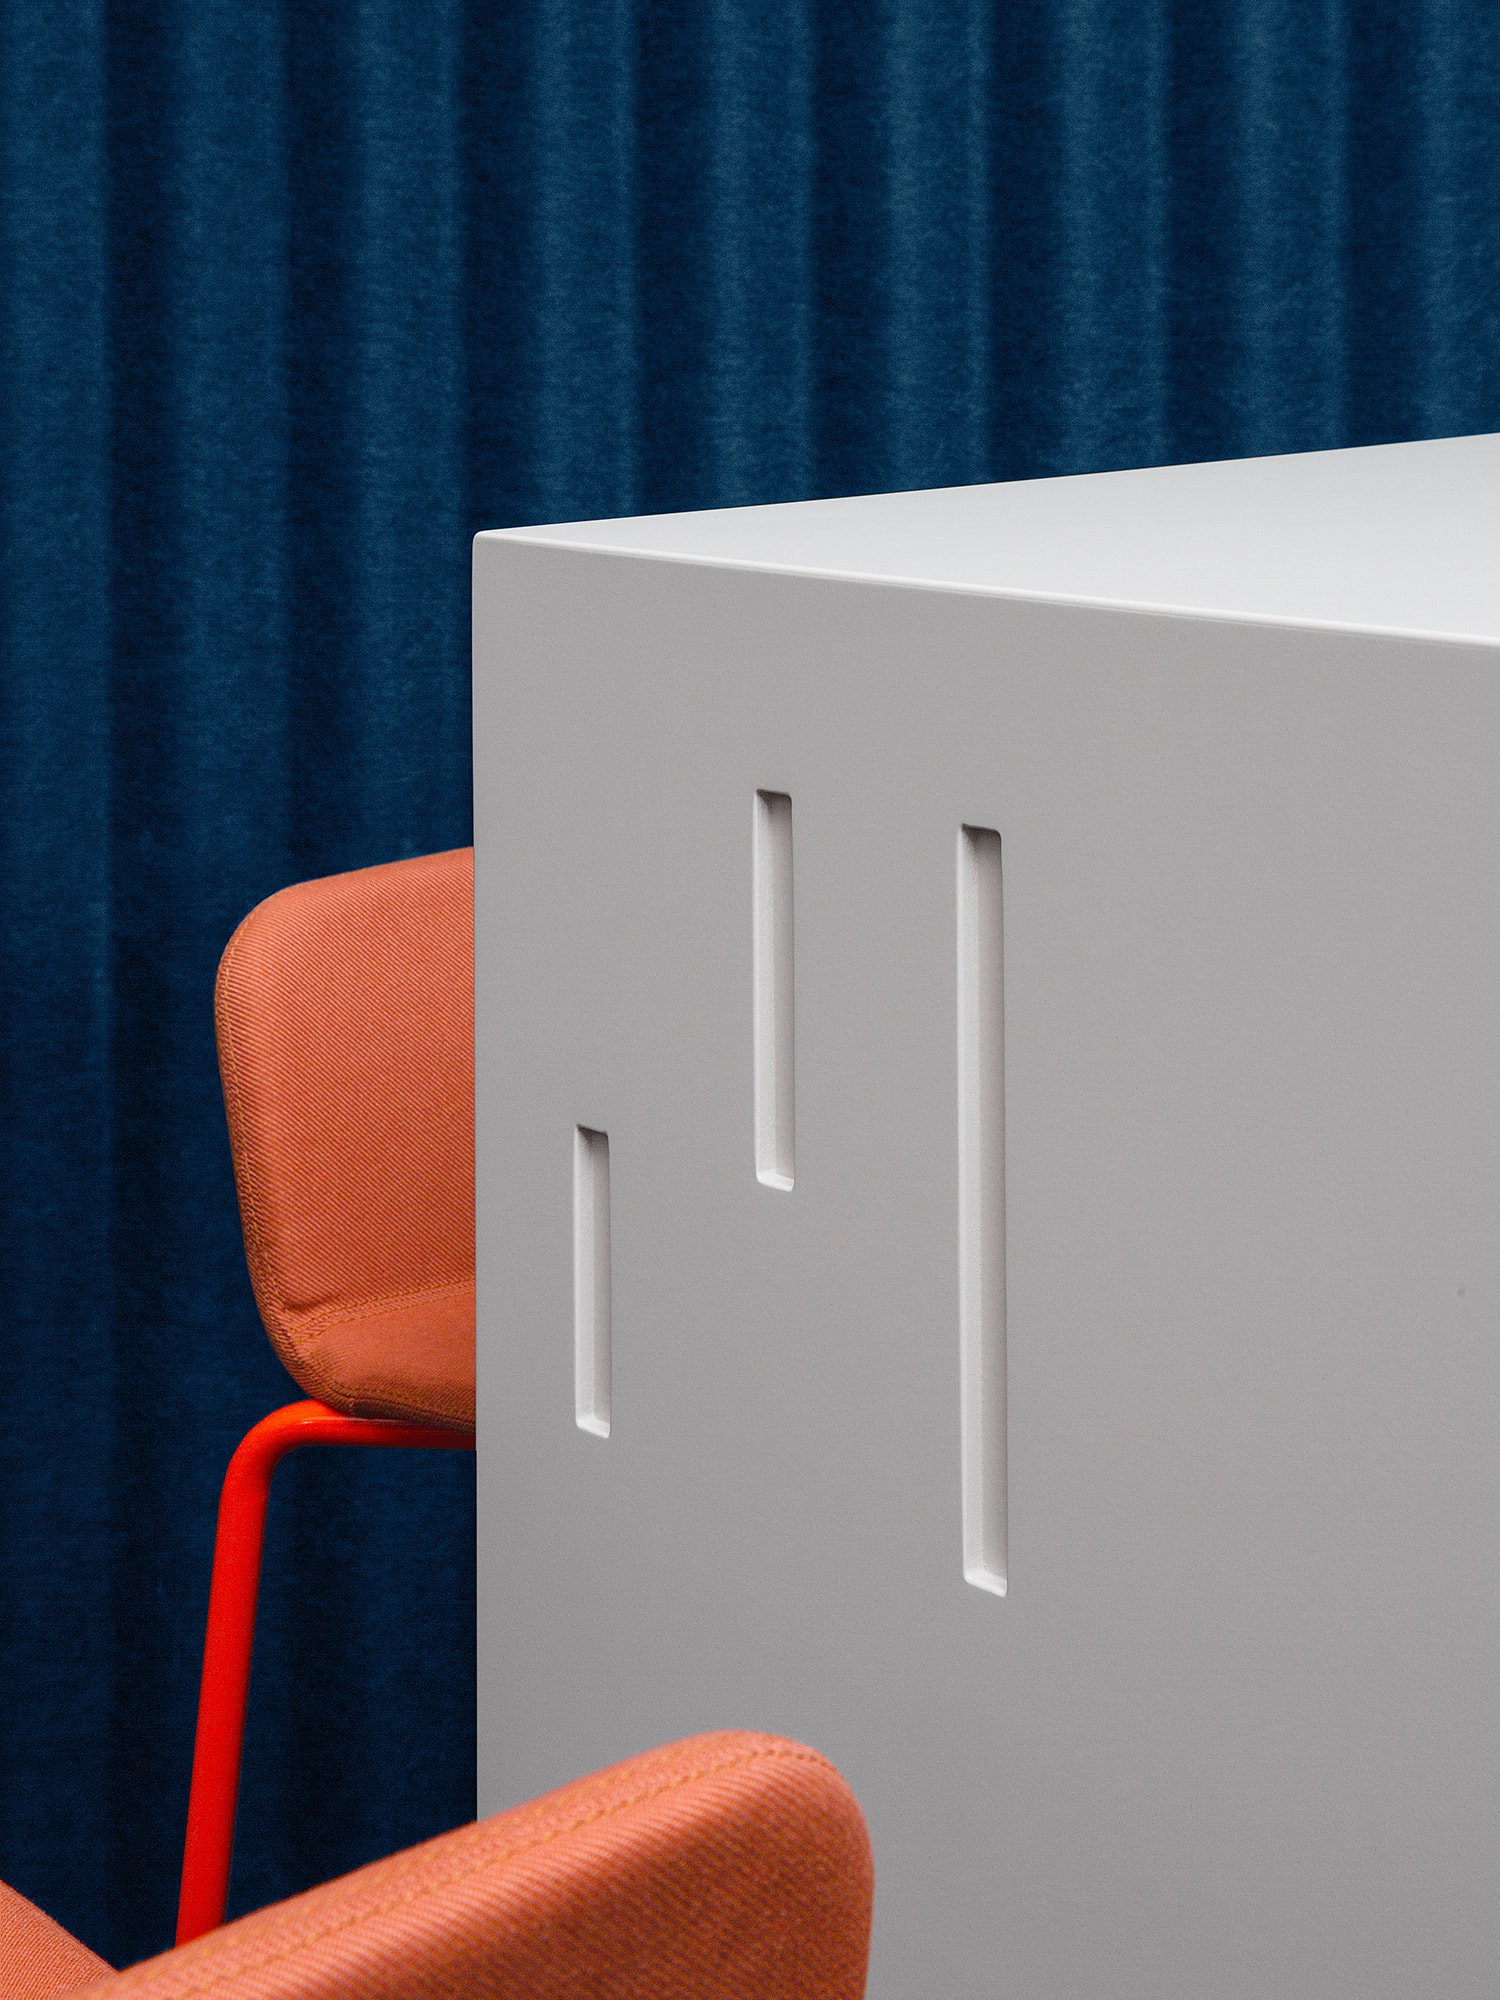 Prägung des KörberHaus-Logos in einen weißen Blocktisch. Zwei orangene Stühle und ein blauer Vorhang im Hintergrund sind zu sehen.